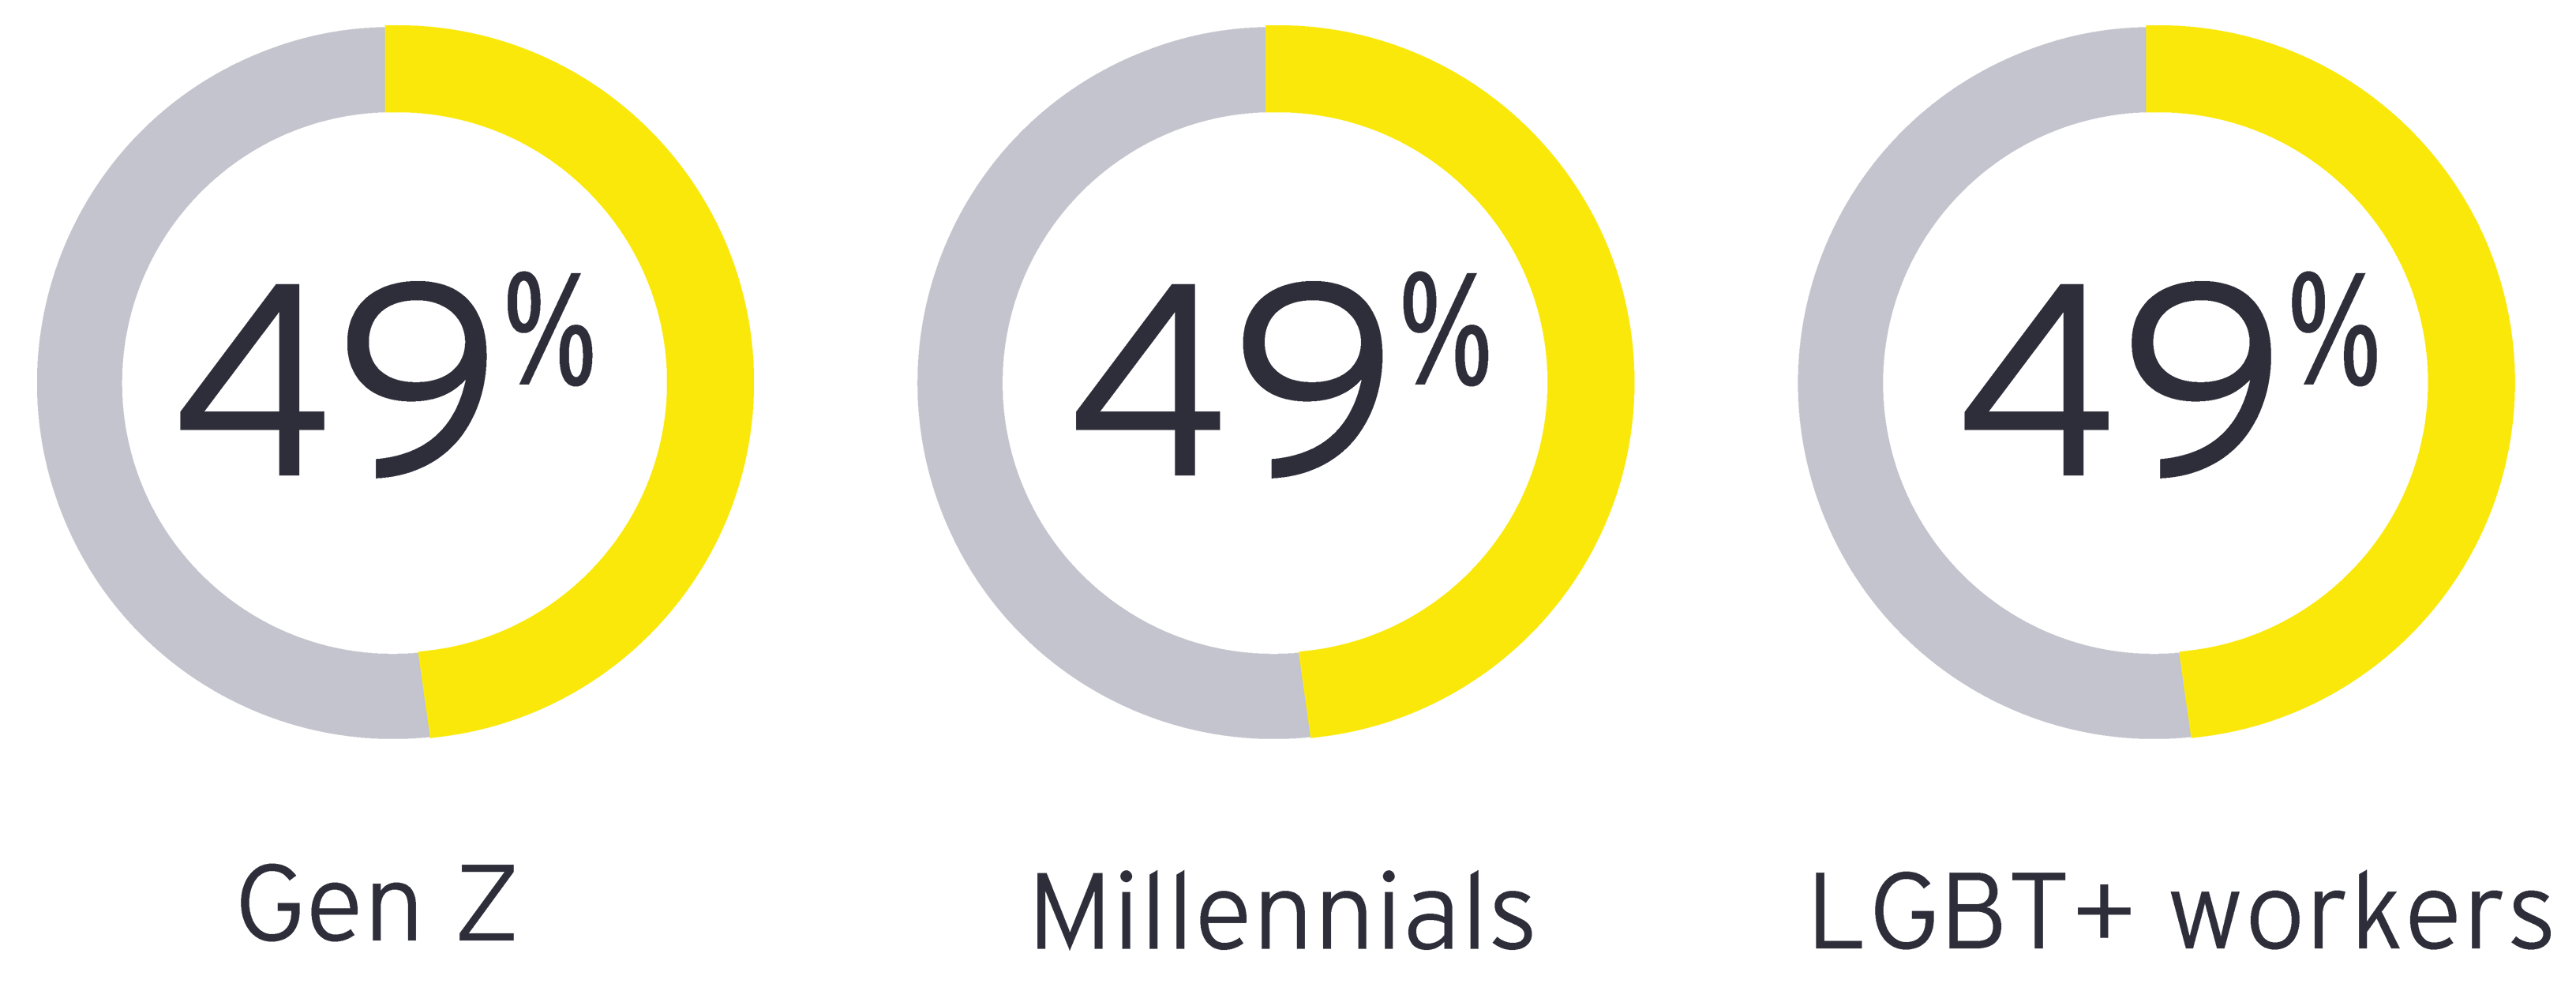 49% of Gen Z | 49% of Millennials | 49% of LGBT + workers